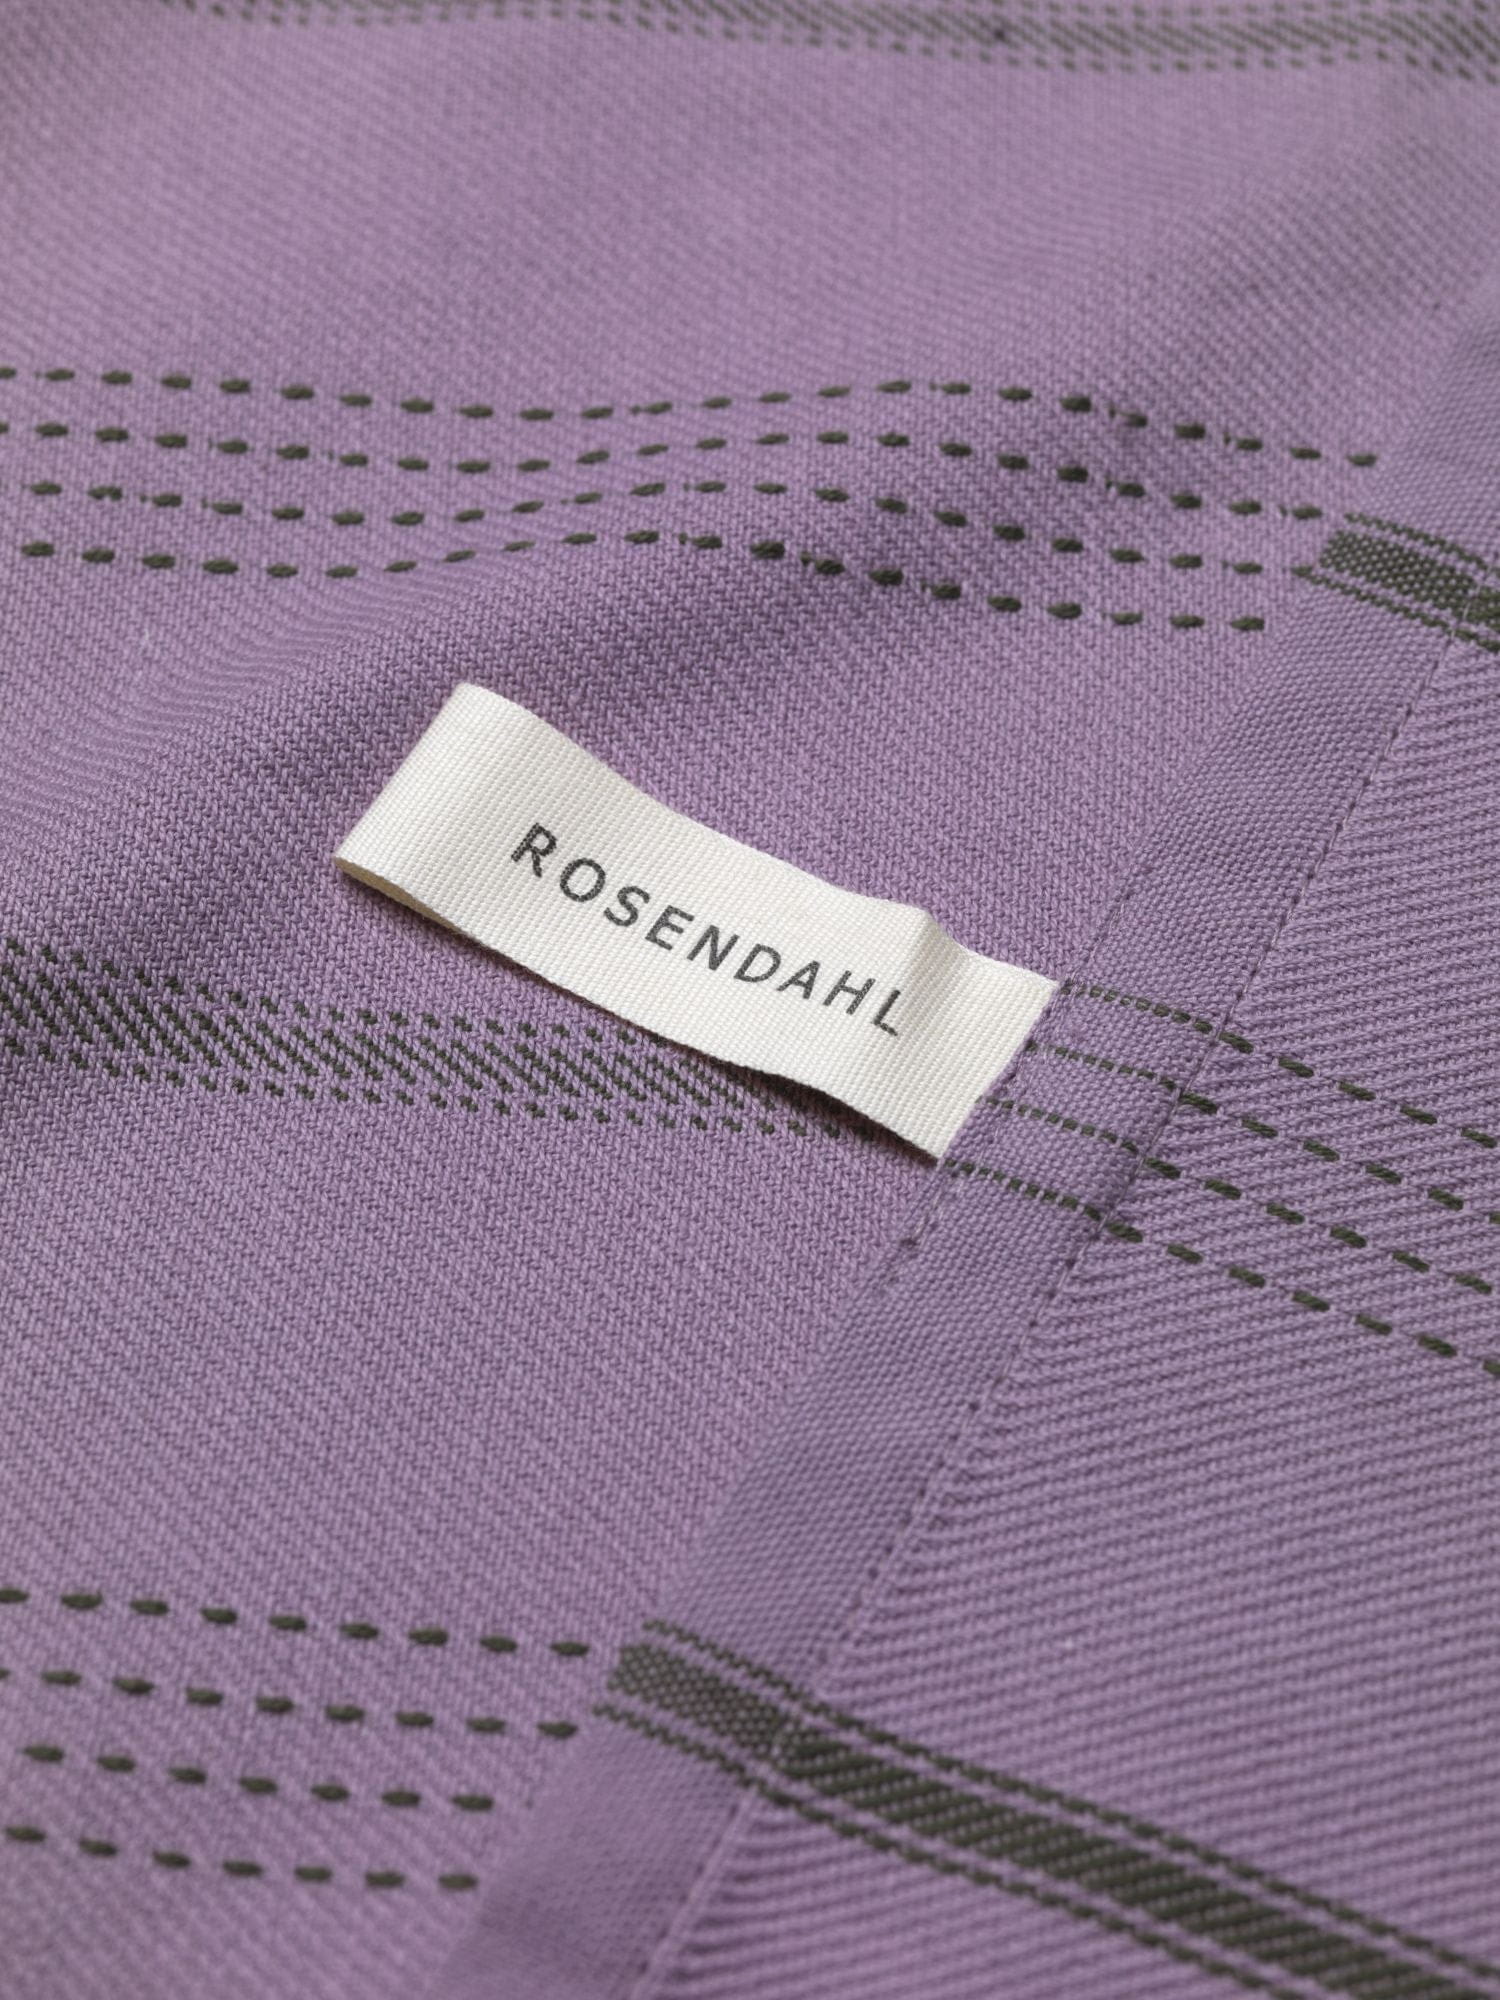 Rosendahl Rosendahl Tekstiler beta te håndklæde 50x70 cm, lilla